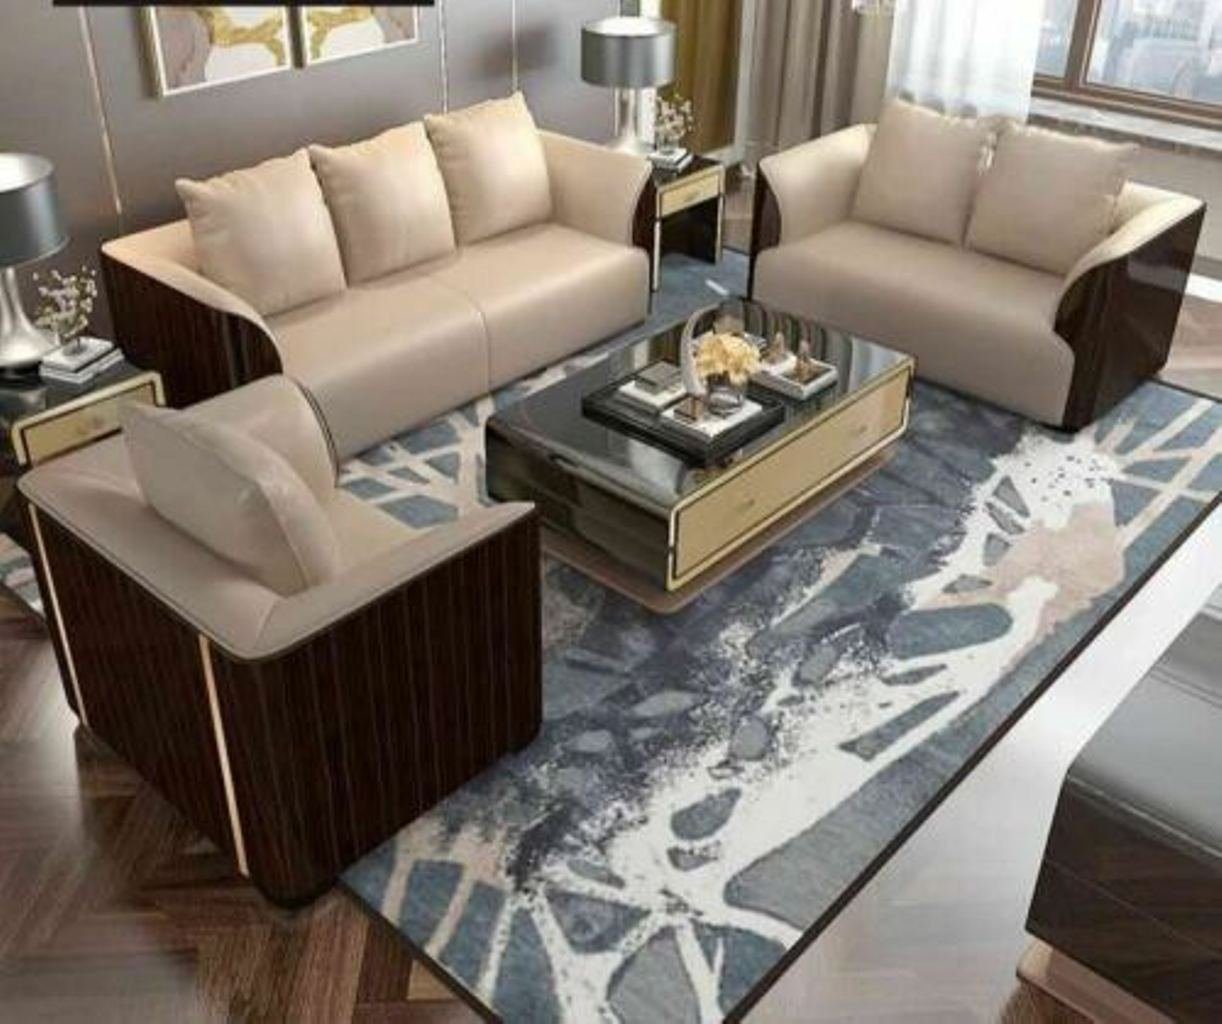 JVmoebel Wohnzimmer-Set, Designer Wohn Zimmer Sitz Möbel Couch Polster Leder Garnitur 3+2+1